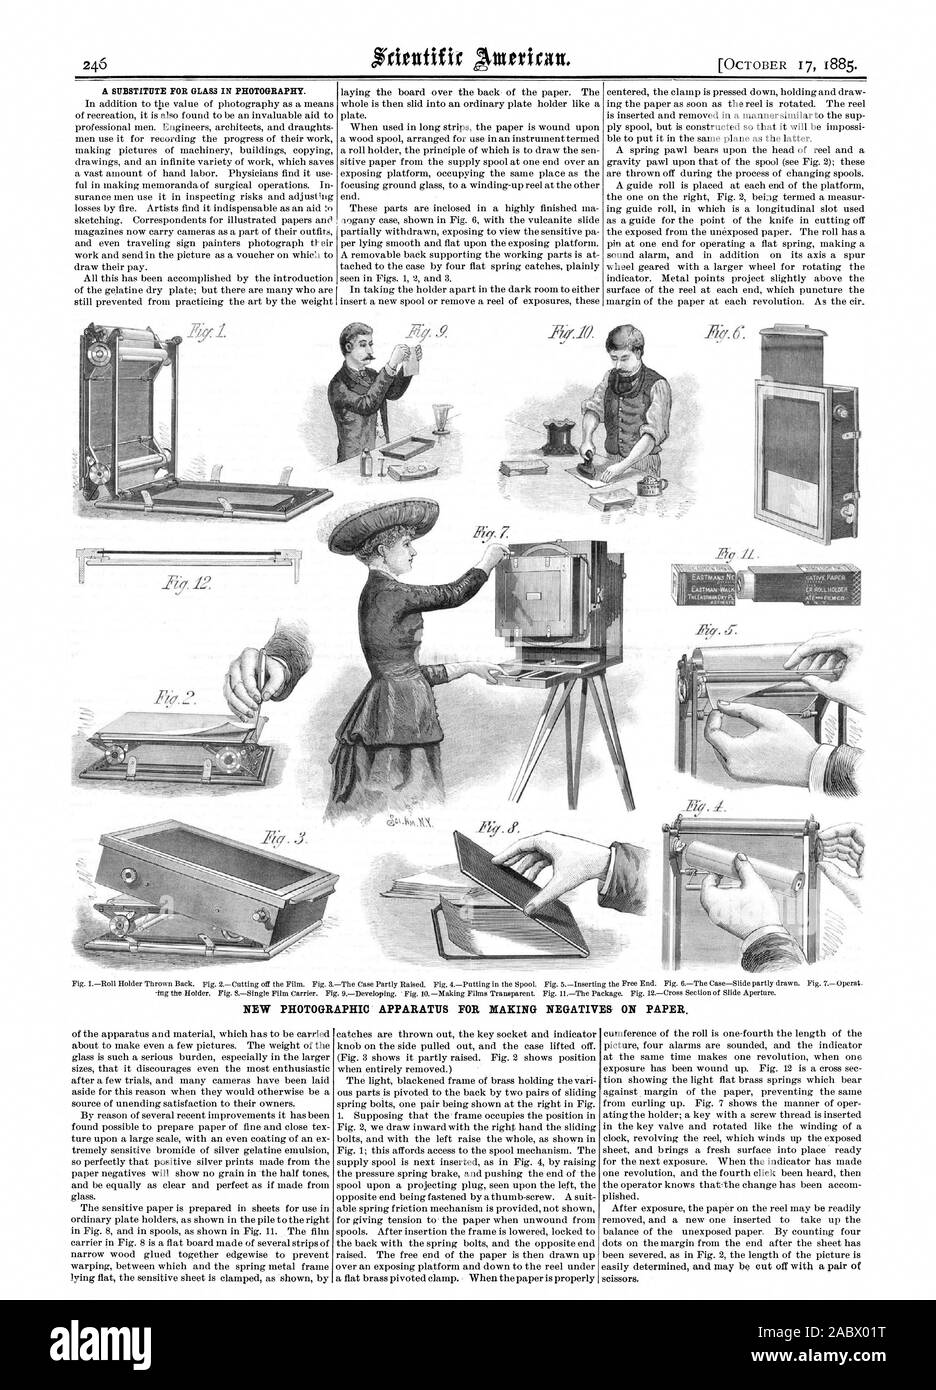 Un sostituto per il vetro in fotografia. Nuovo apparato fotografico per rendere NEGATIVI SU CARTA., Scientific American, 1885-10-17 Foto Stock